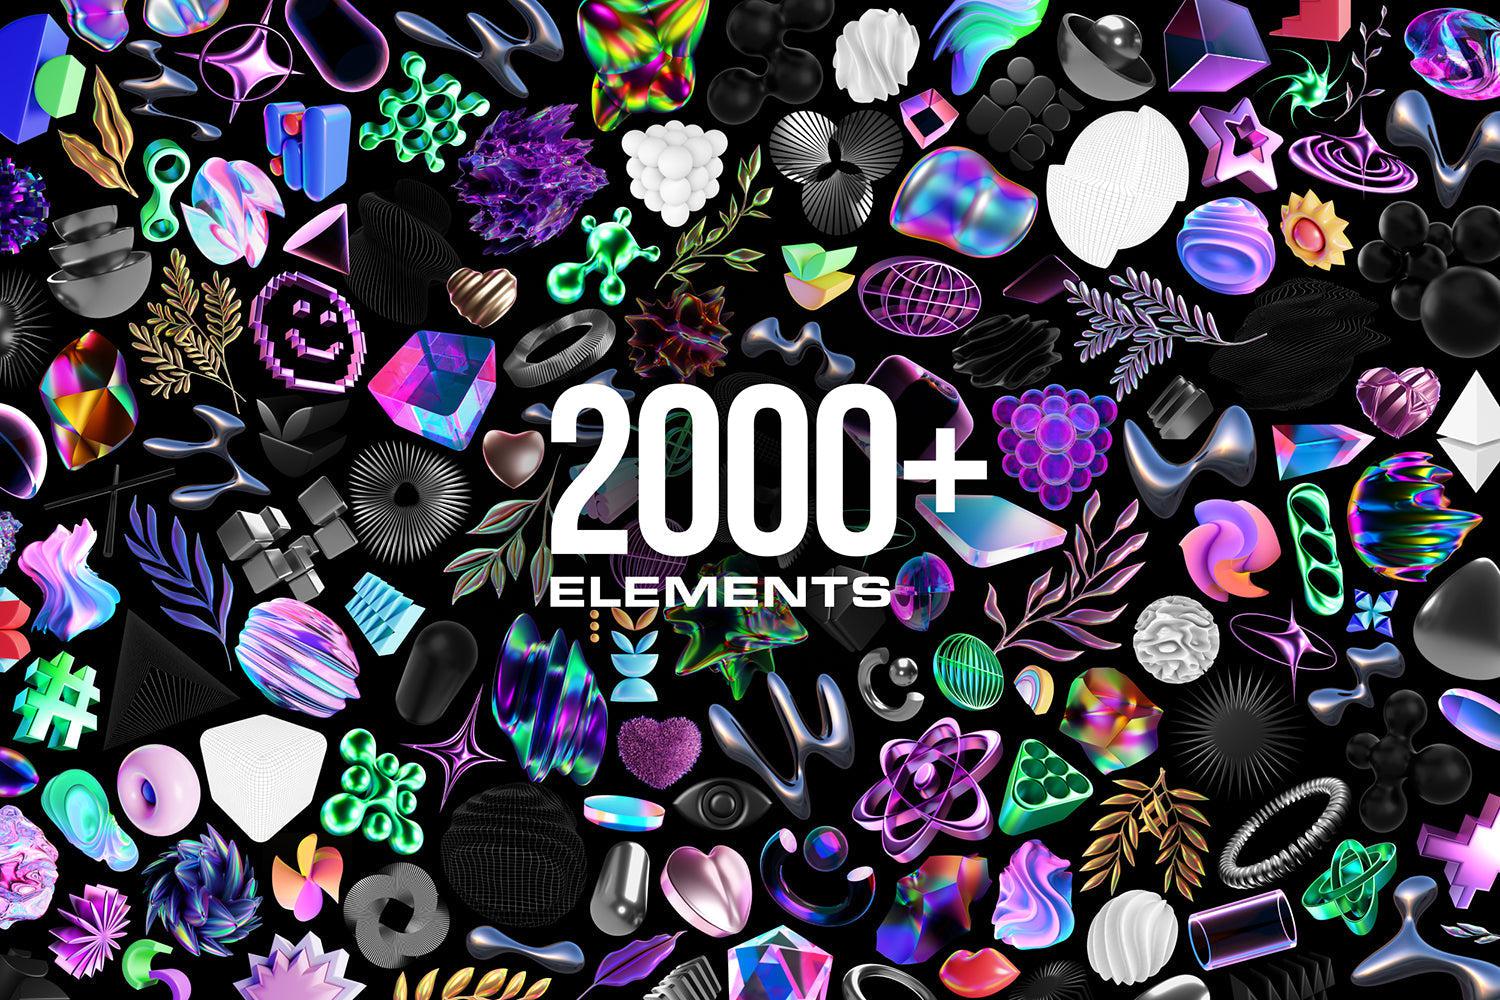 MASSIVE 3D BUNDLE - 2000+ elements